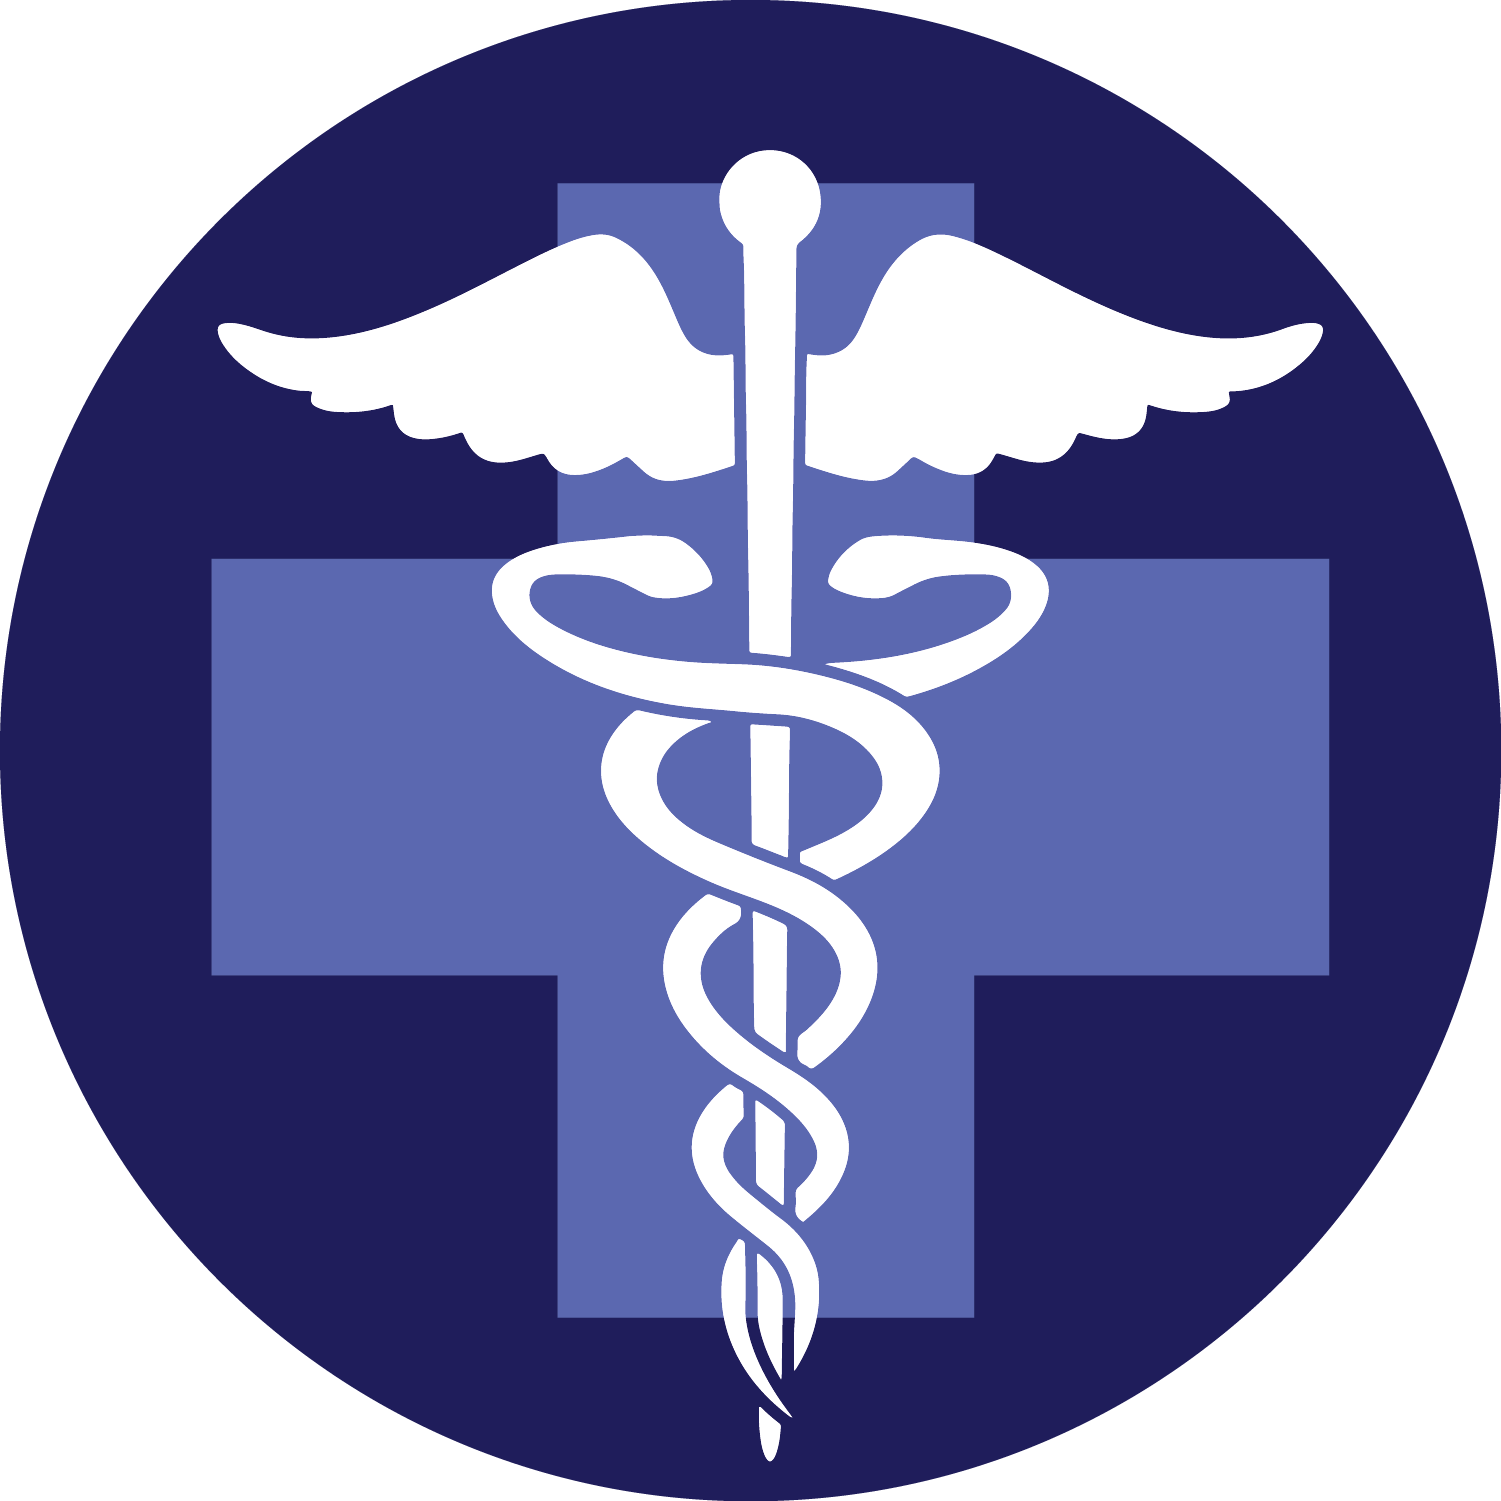 Медицинские ведомства. Символ медицины. Медицинские символы. Логотип медицины. Значок здравоохранения.